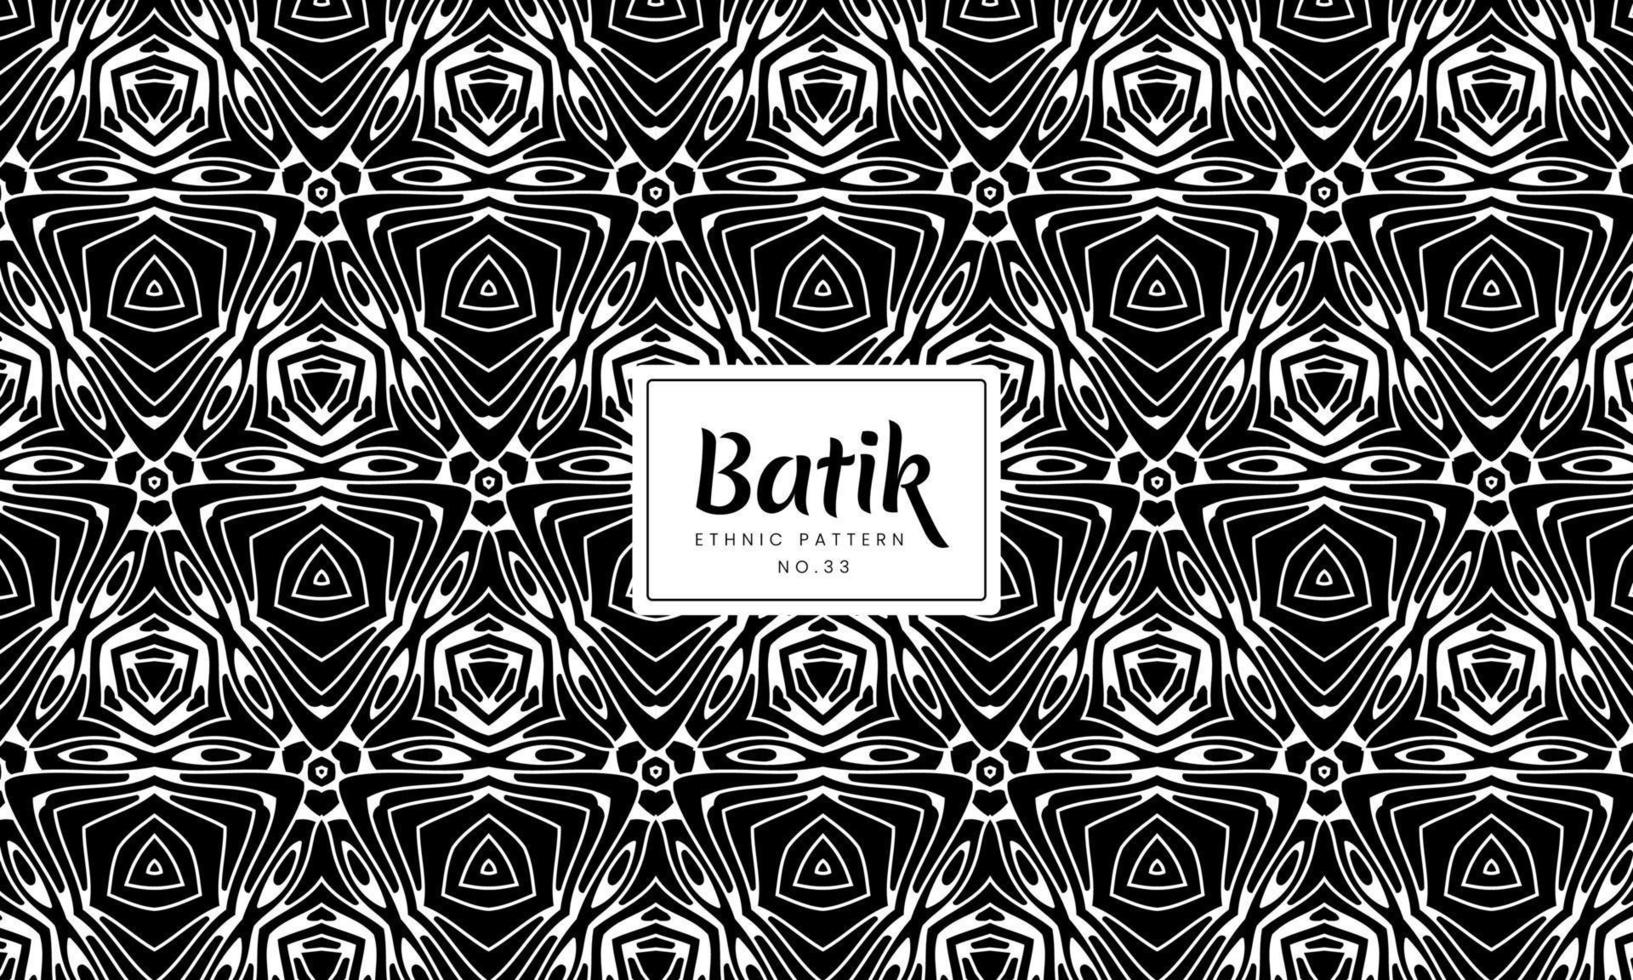 abstracte batik Indonesische traditionele etnische bloemenpatronen vector background